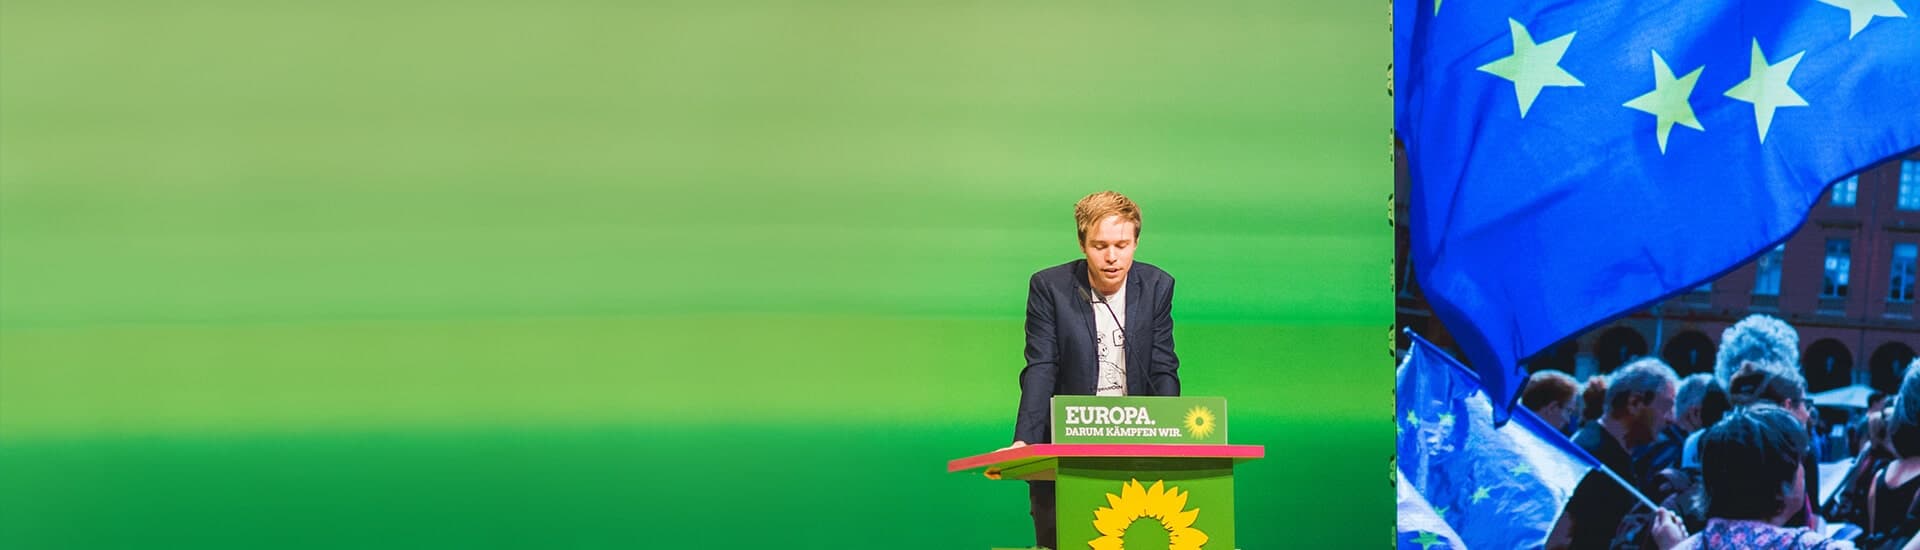 Rasmus hinter einem Rednerpult, auf dem das Logo der Grünen und der Spruch "Europa, darum kämpfen wir" zu sehen sind